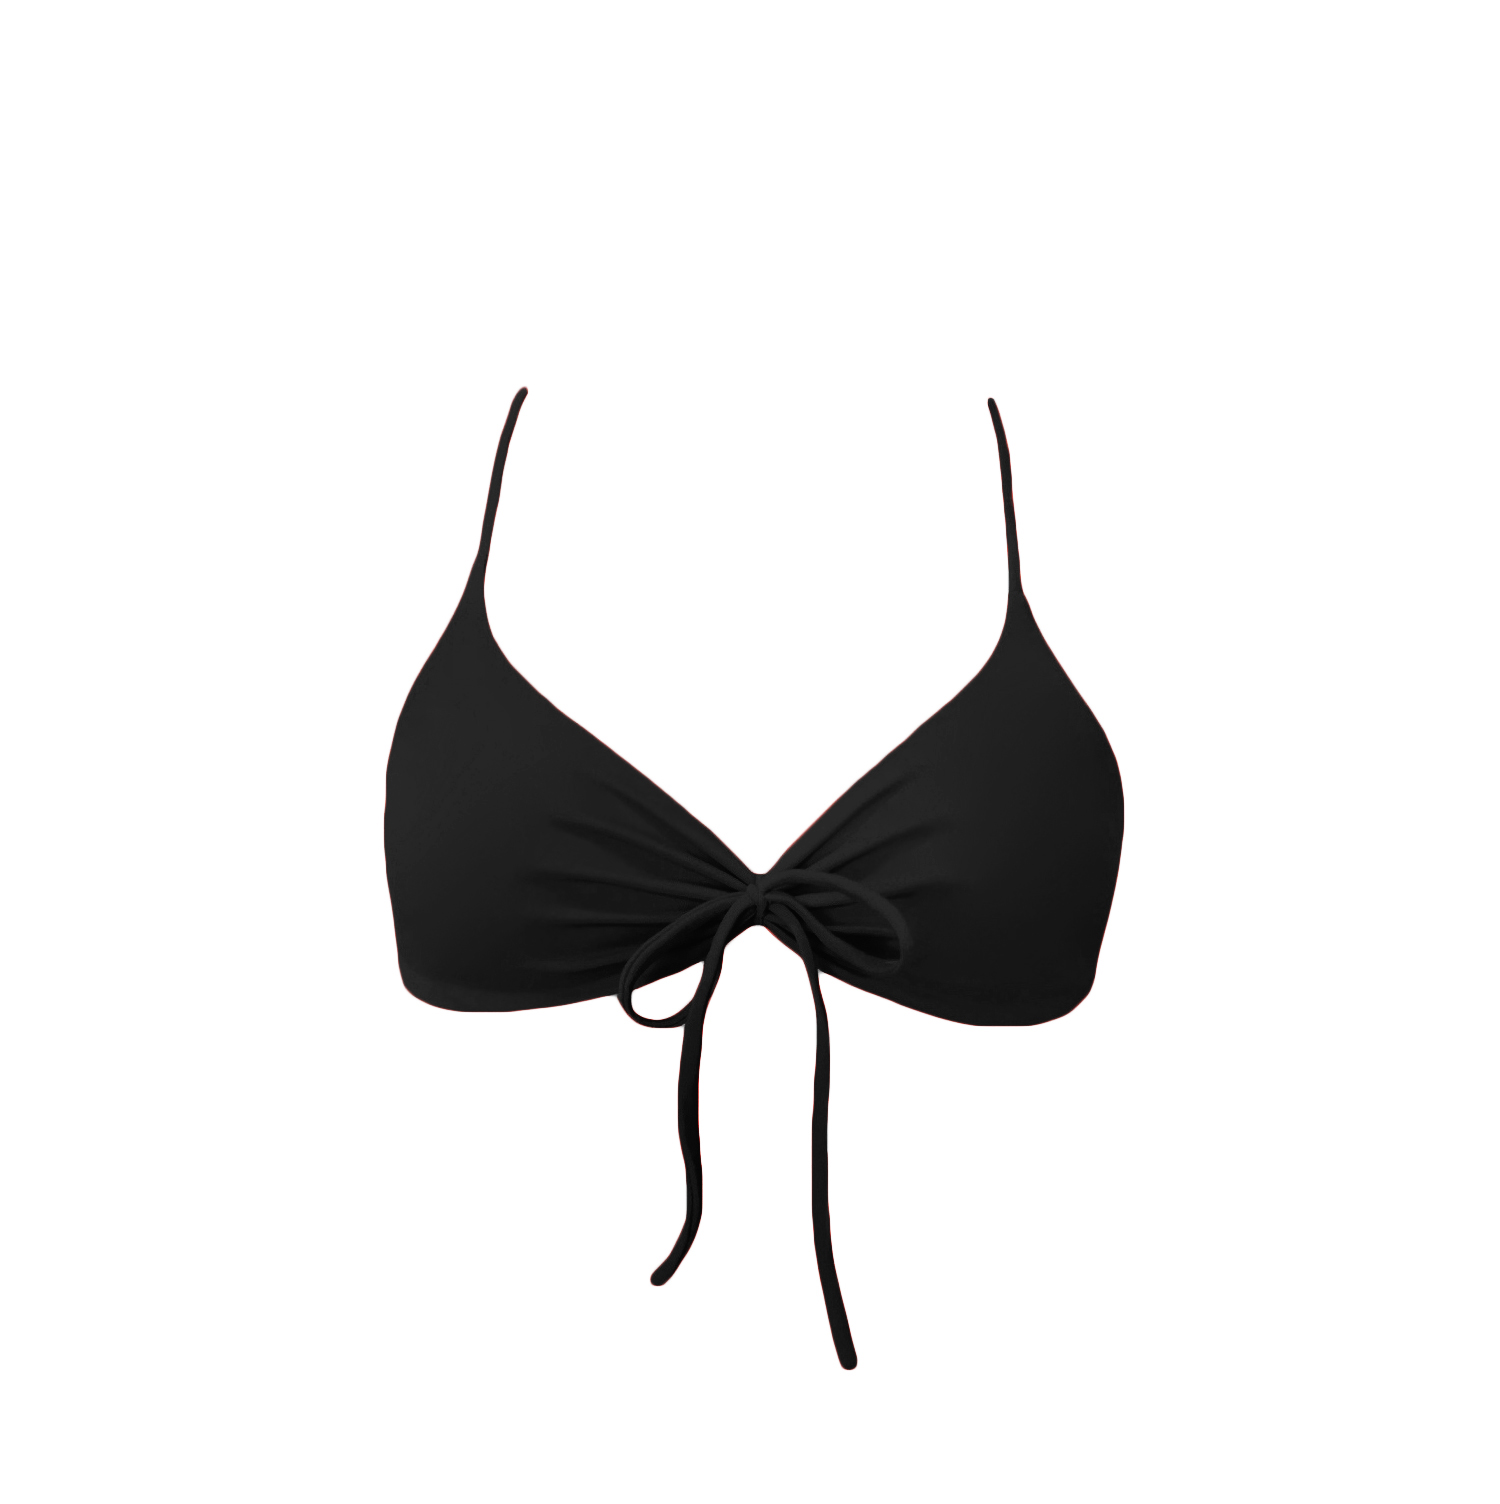 acaia-top-bikini-tied-góra-czarna black-długie-paseczki-sznureczki-kokardki-bikini-acaia- polska marka swimwer bikini top bottom brazilian black 3